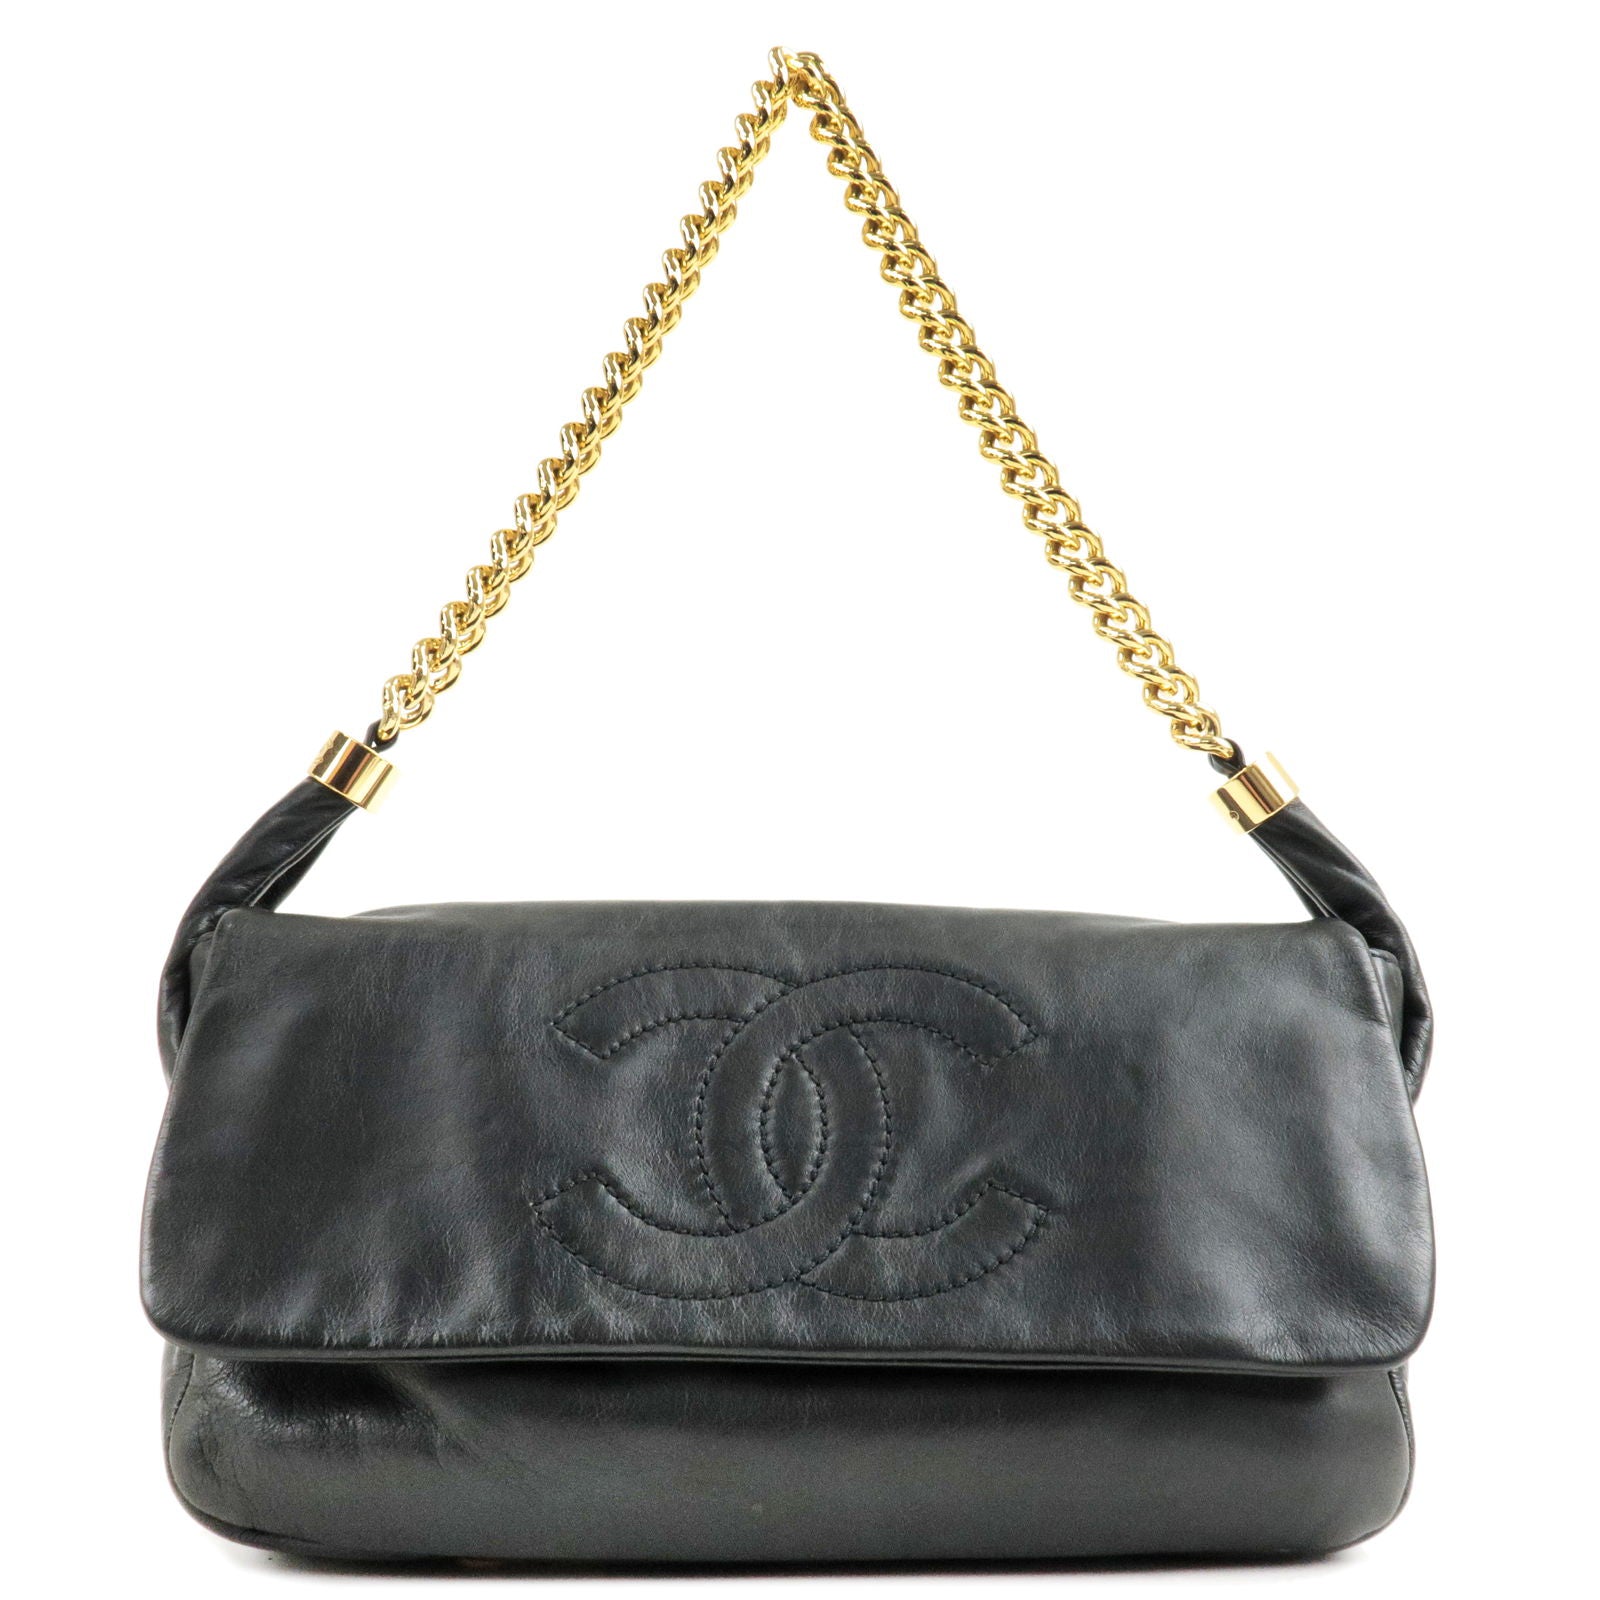 Coco Chanel Handbag 